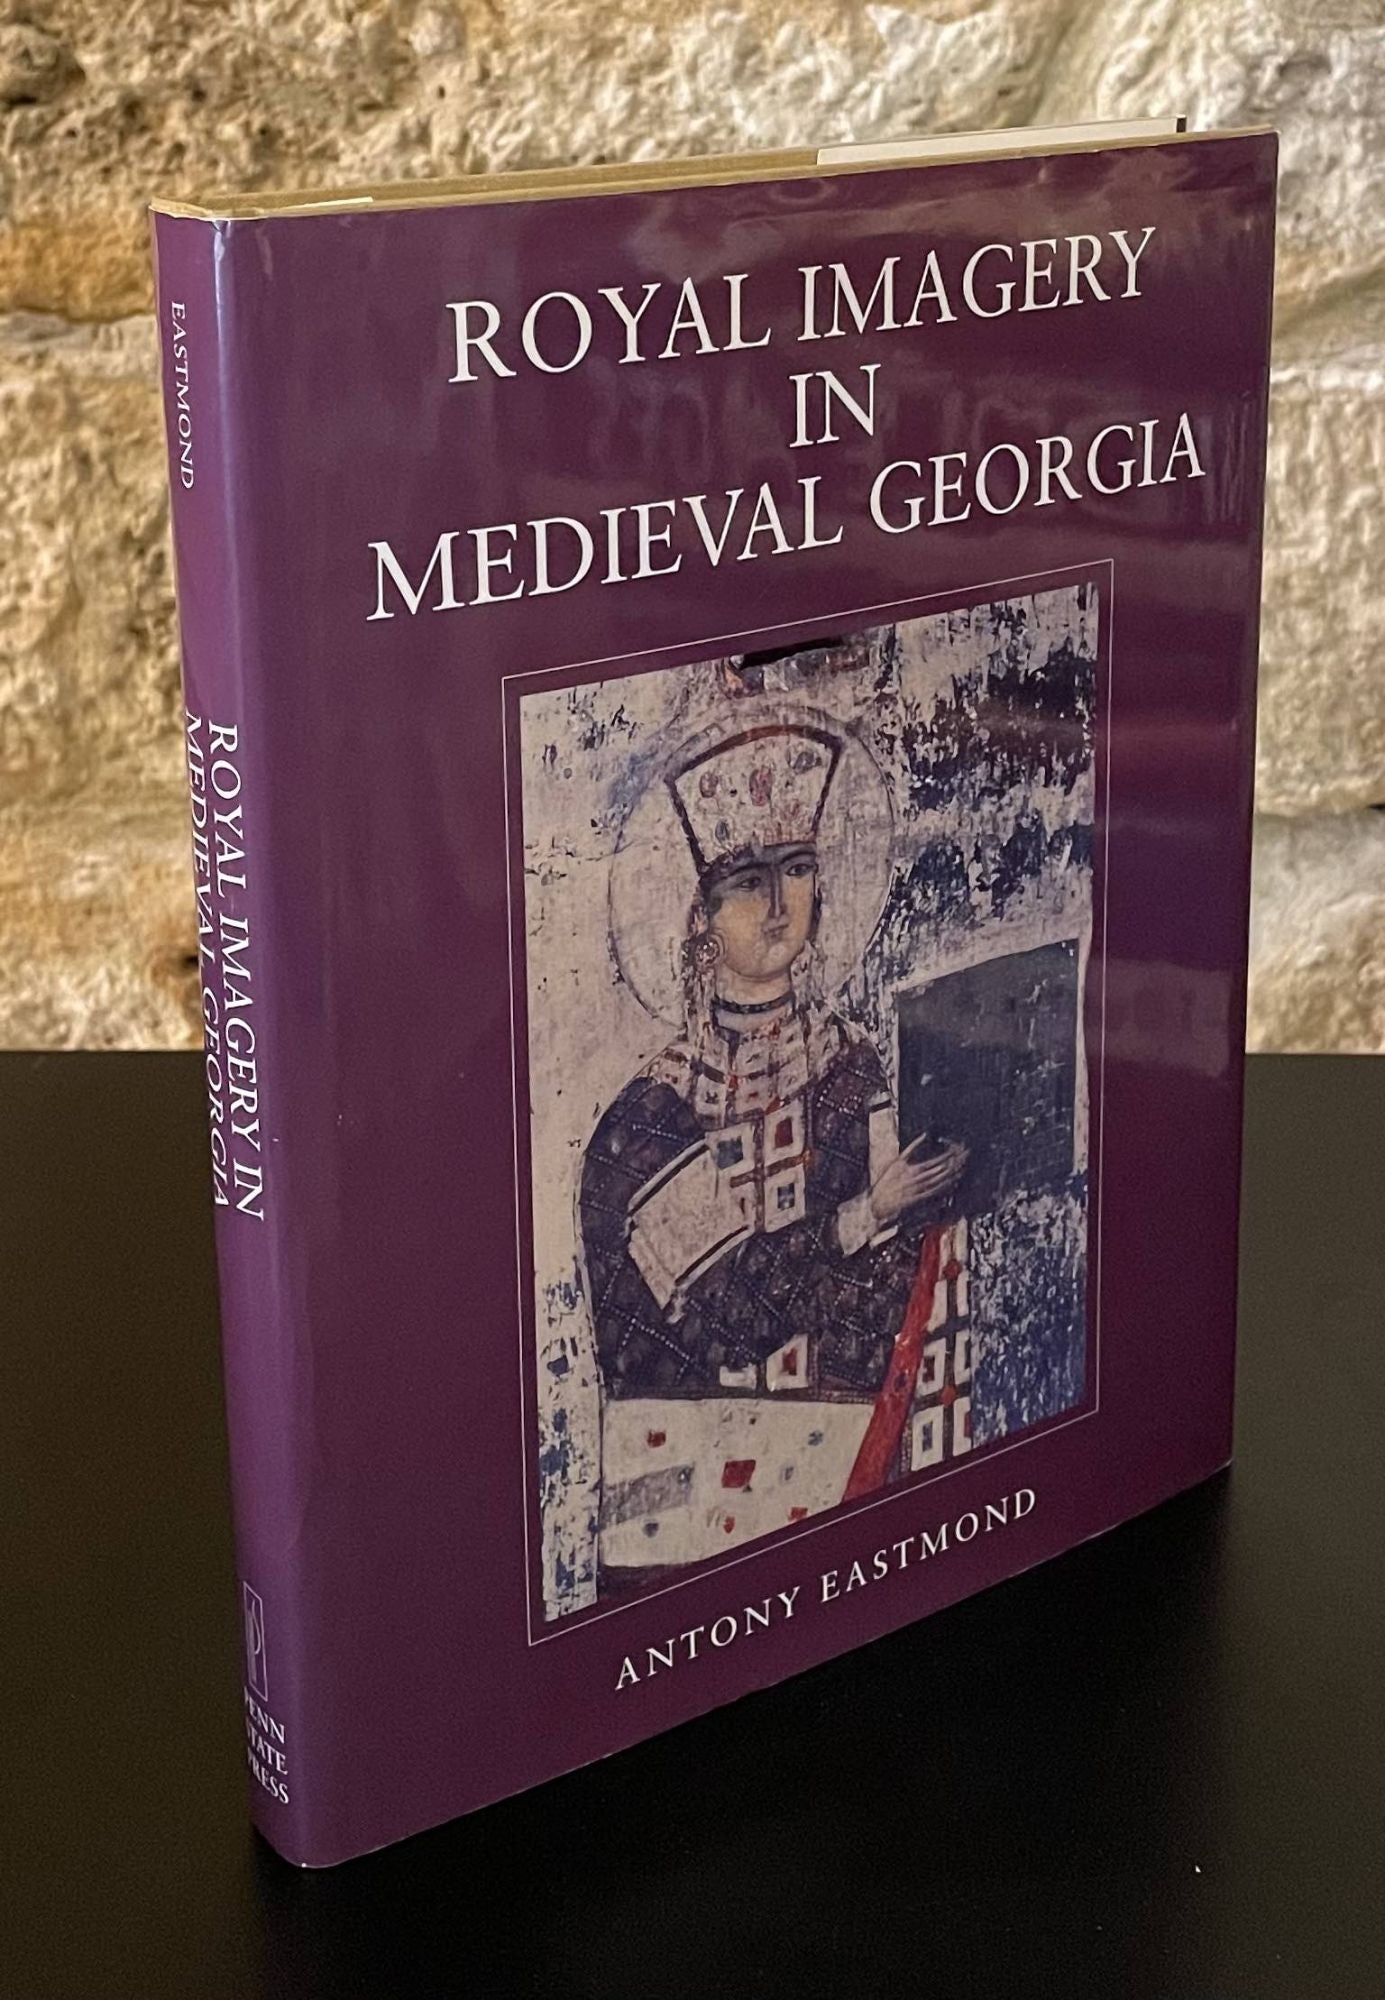 Royal Imagery in Medieval Georgia - Eastmond, Antony